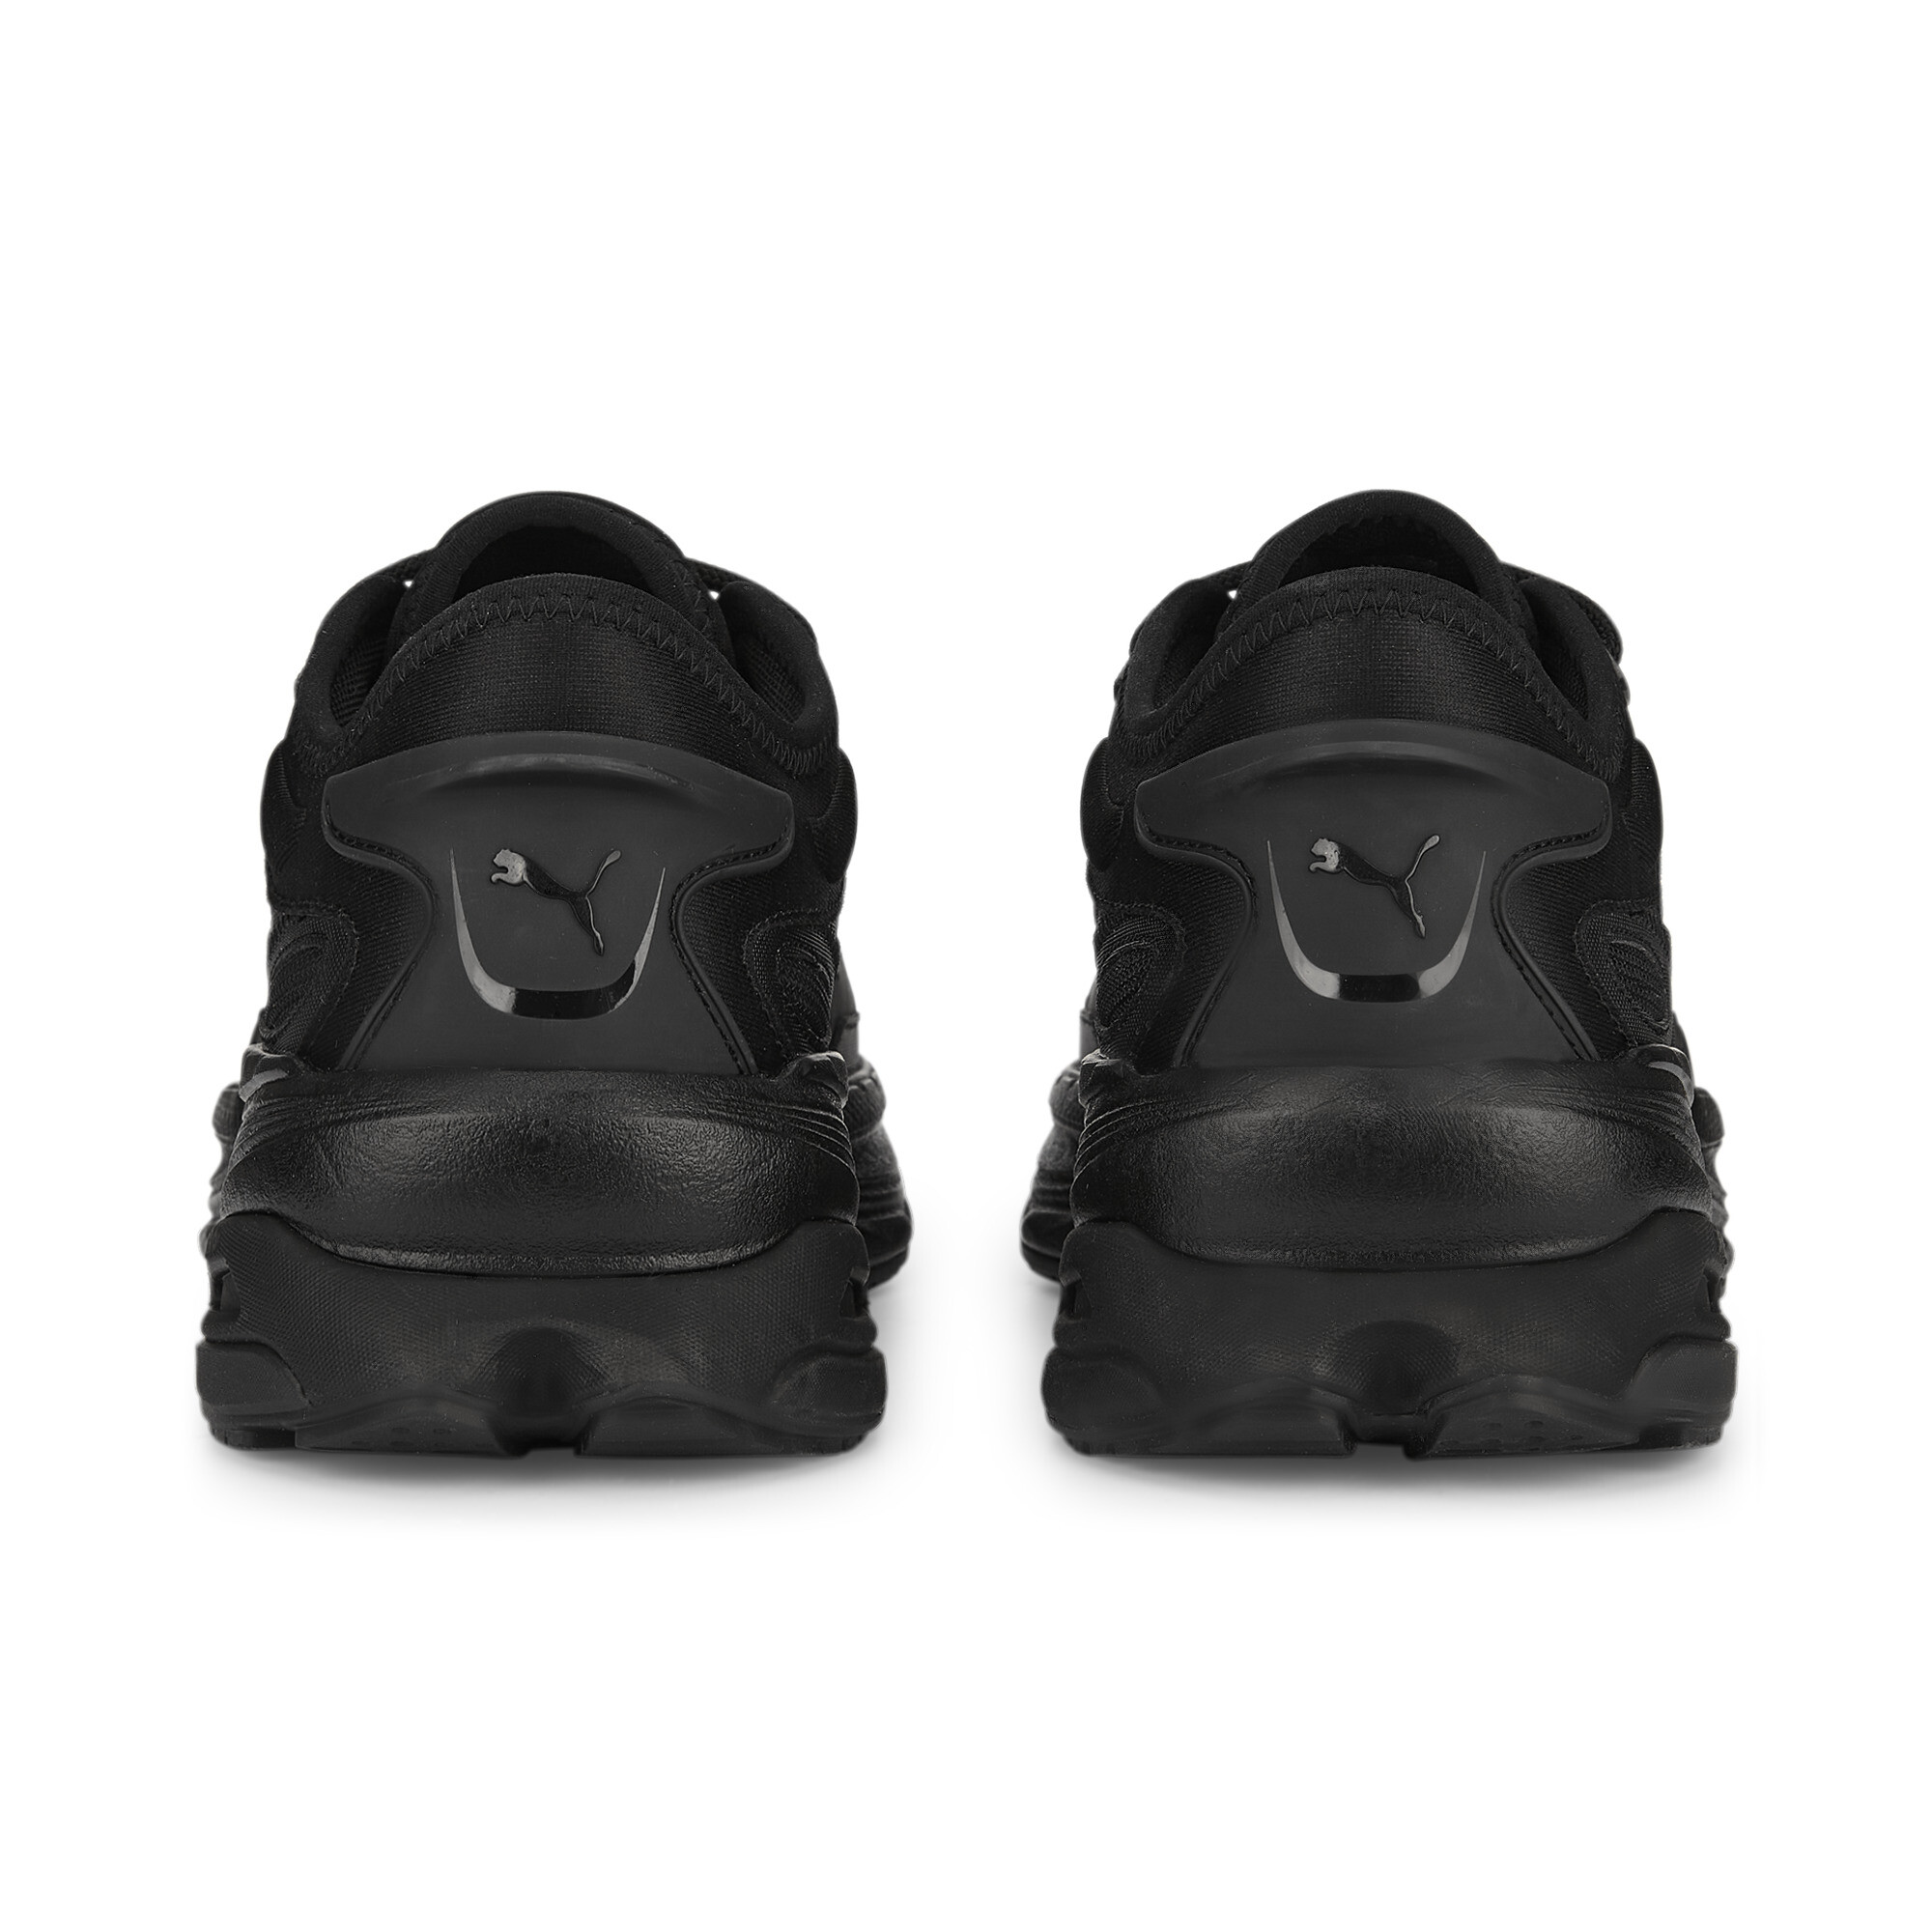 Men's PUMA Extent Nitro Mono Sneakers In Black, Size EU 45